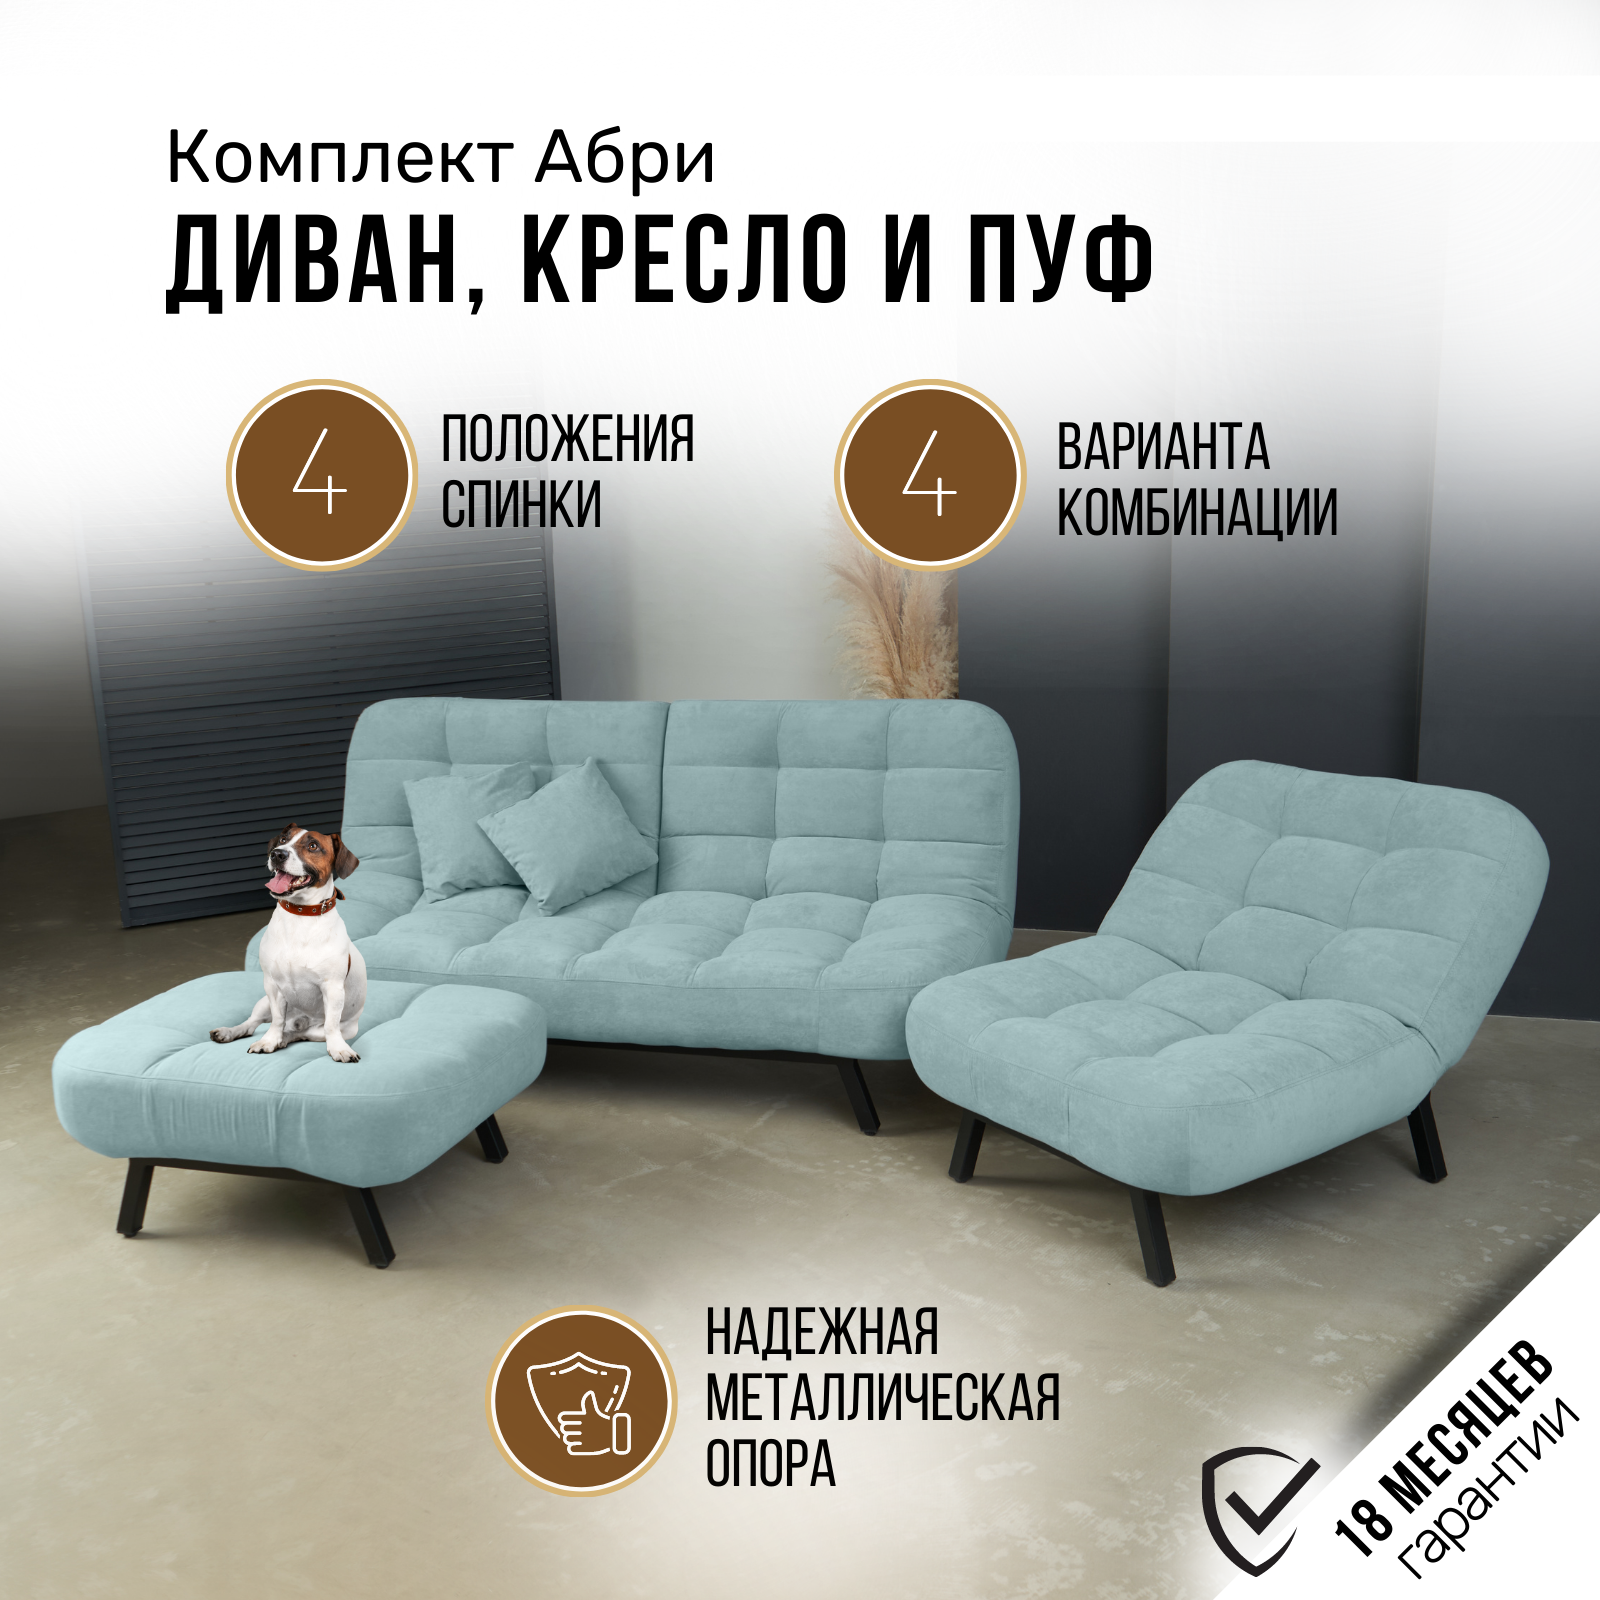 Комплект мягкой мебели Диван, кресло и пуф 303 механизм клик-кляк, материализносостойкий велюр, цвет мятный — купить в интернет-магазине по низкойцене на Яндекс Маркете